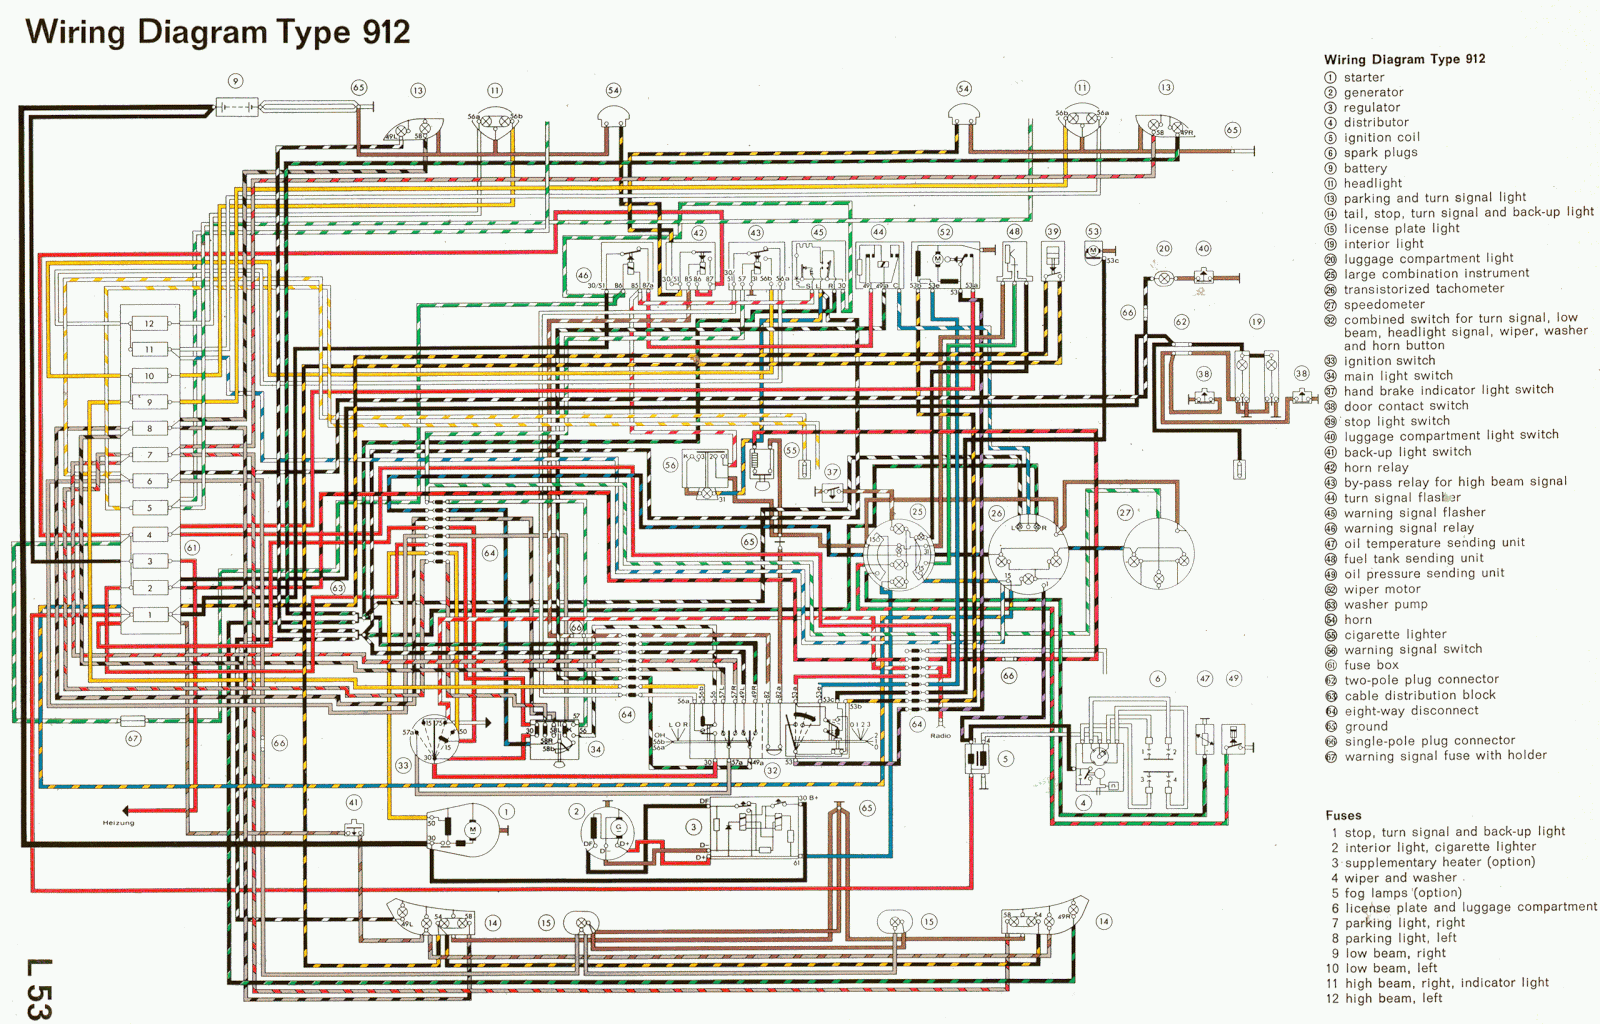 Free Auto Wiring Diagram: 912 Porsche Wiring Diagram